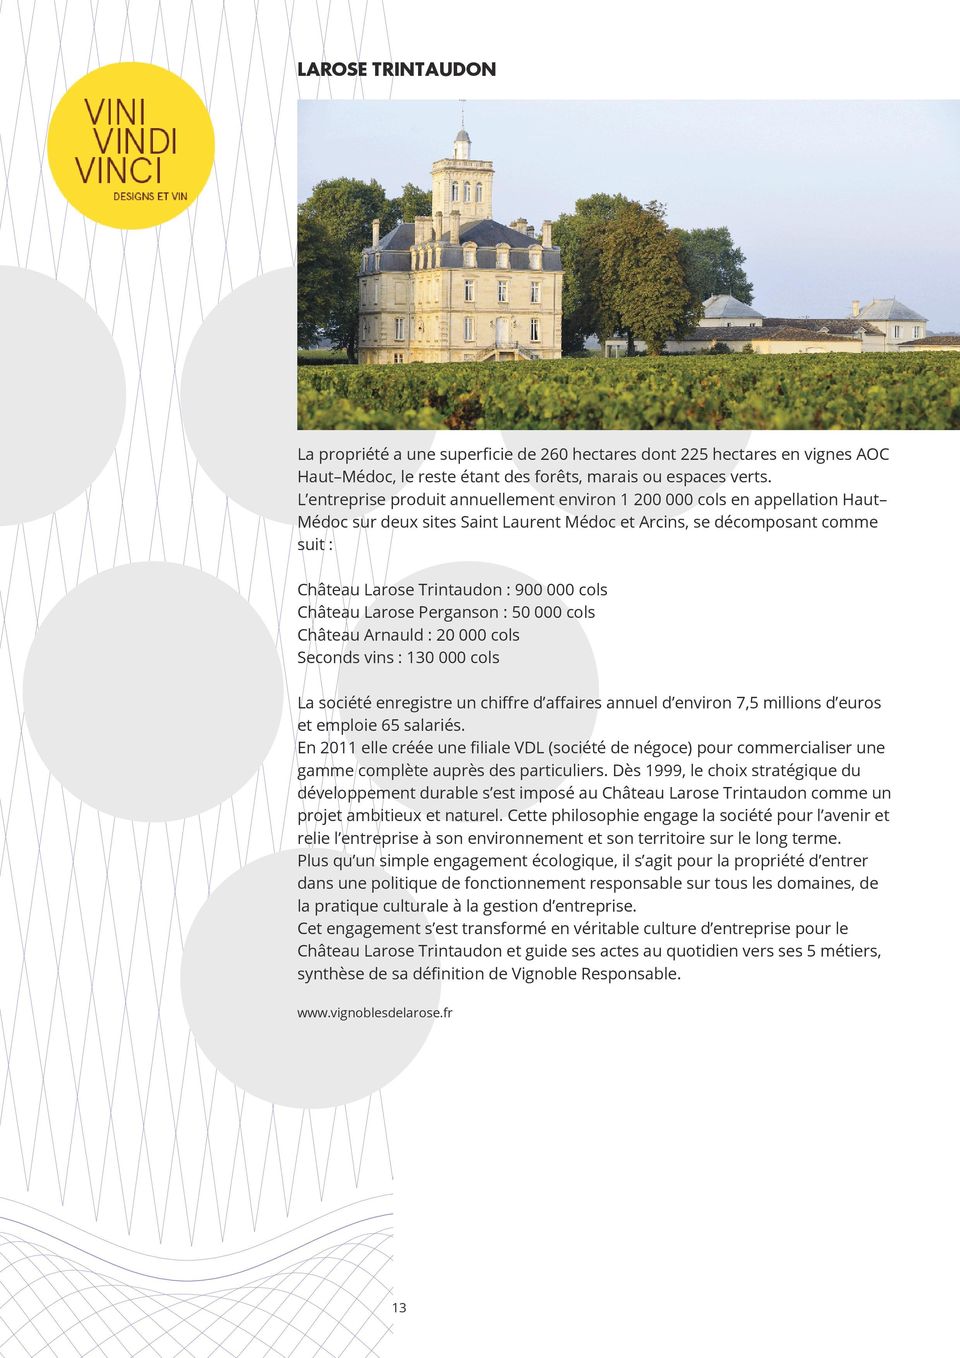 Château Larose Perganson : 50 000 cols Château Arnauld : 20 000 cols Seconds vins : 130 000 cols La société enregistre un chiffre d affaires annuel d environ 7,5 millions d euros et emploie 65